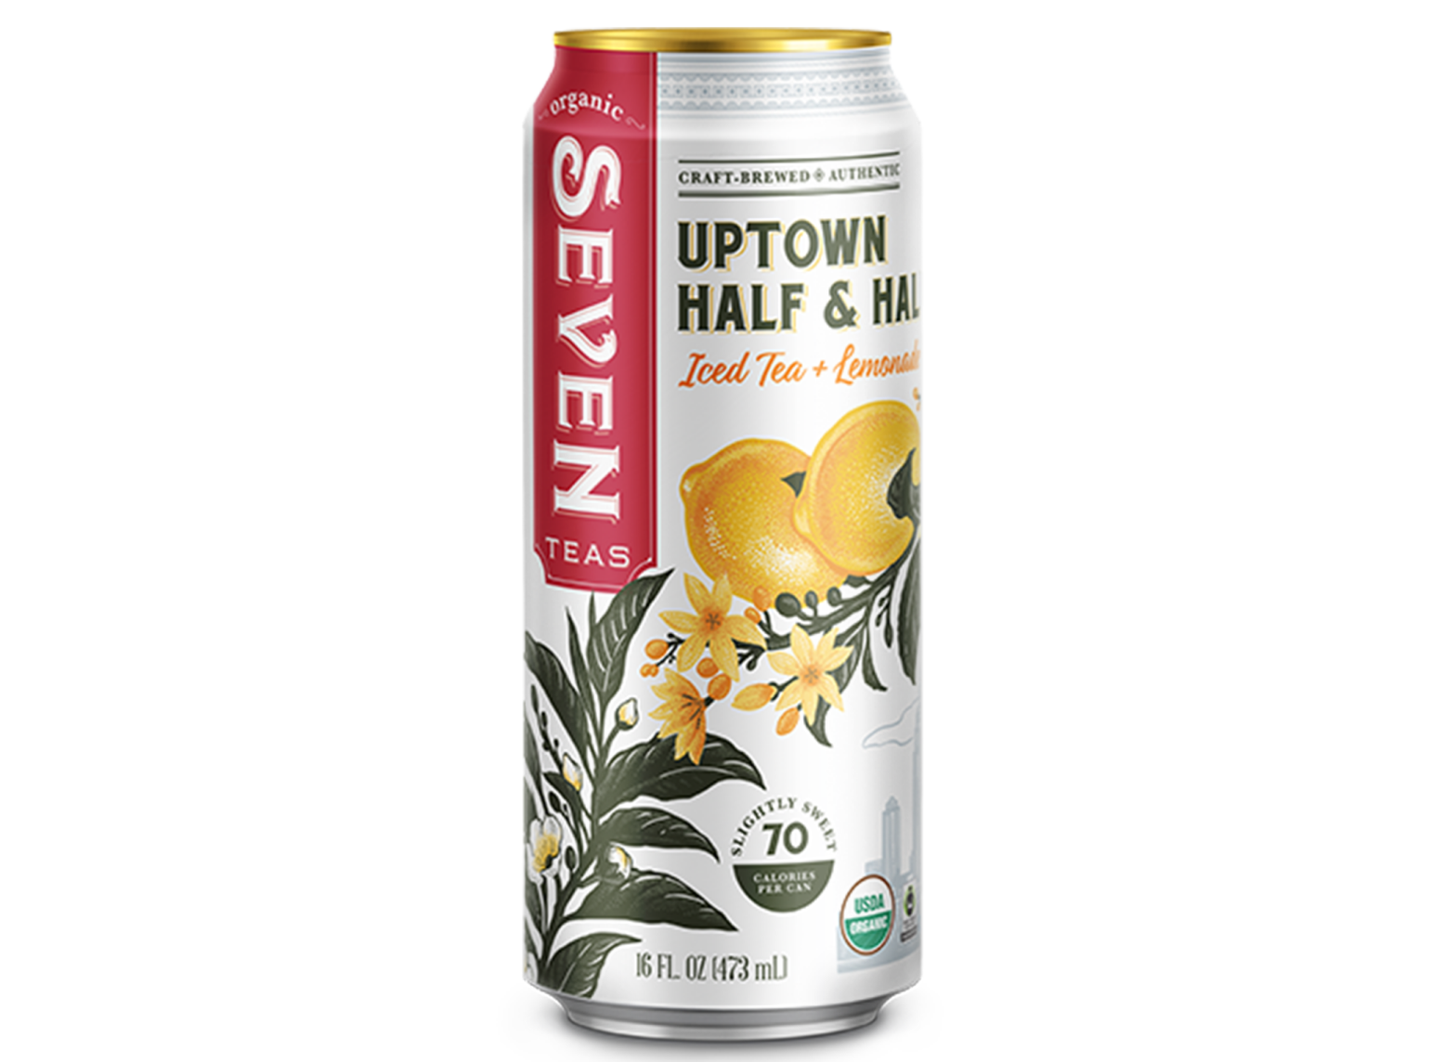 Uptown Half & Half Iced Tea + Lemonade